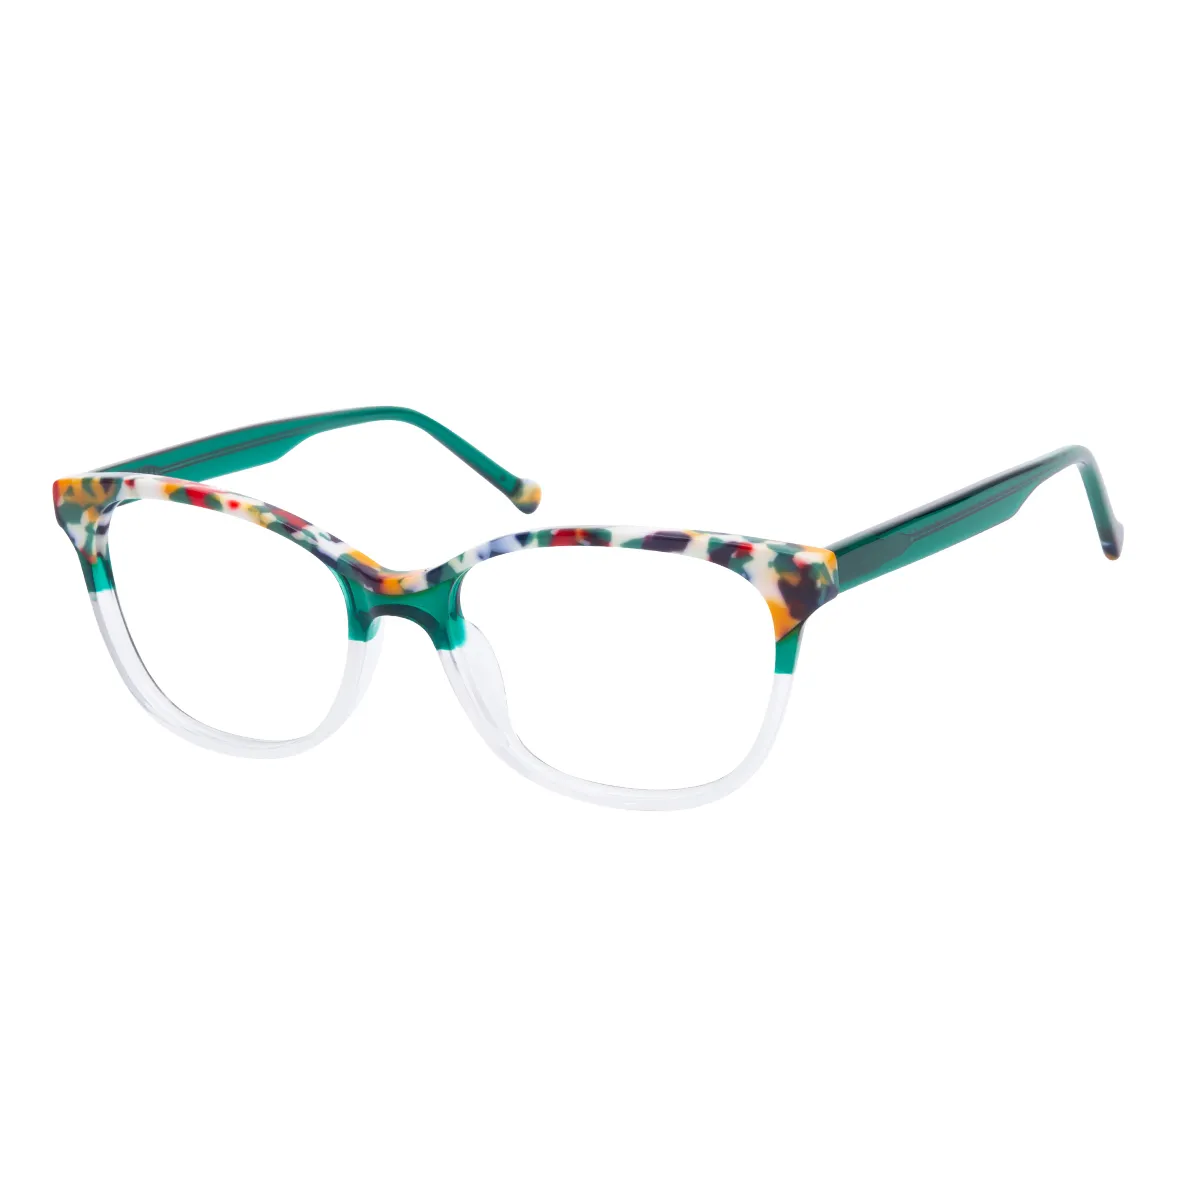 Lyric - Oval Green Glasses for Women